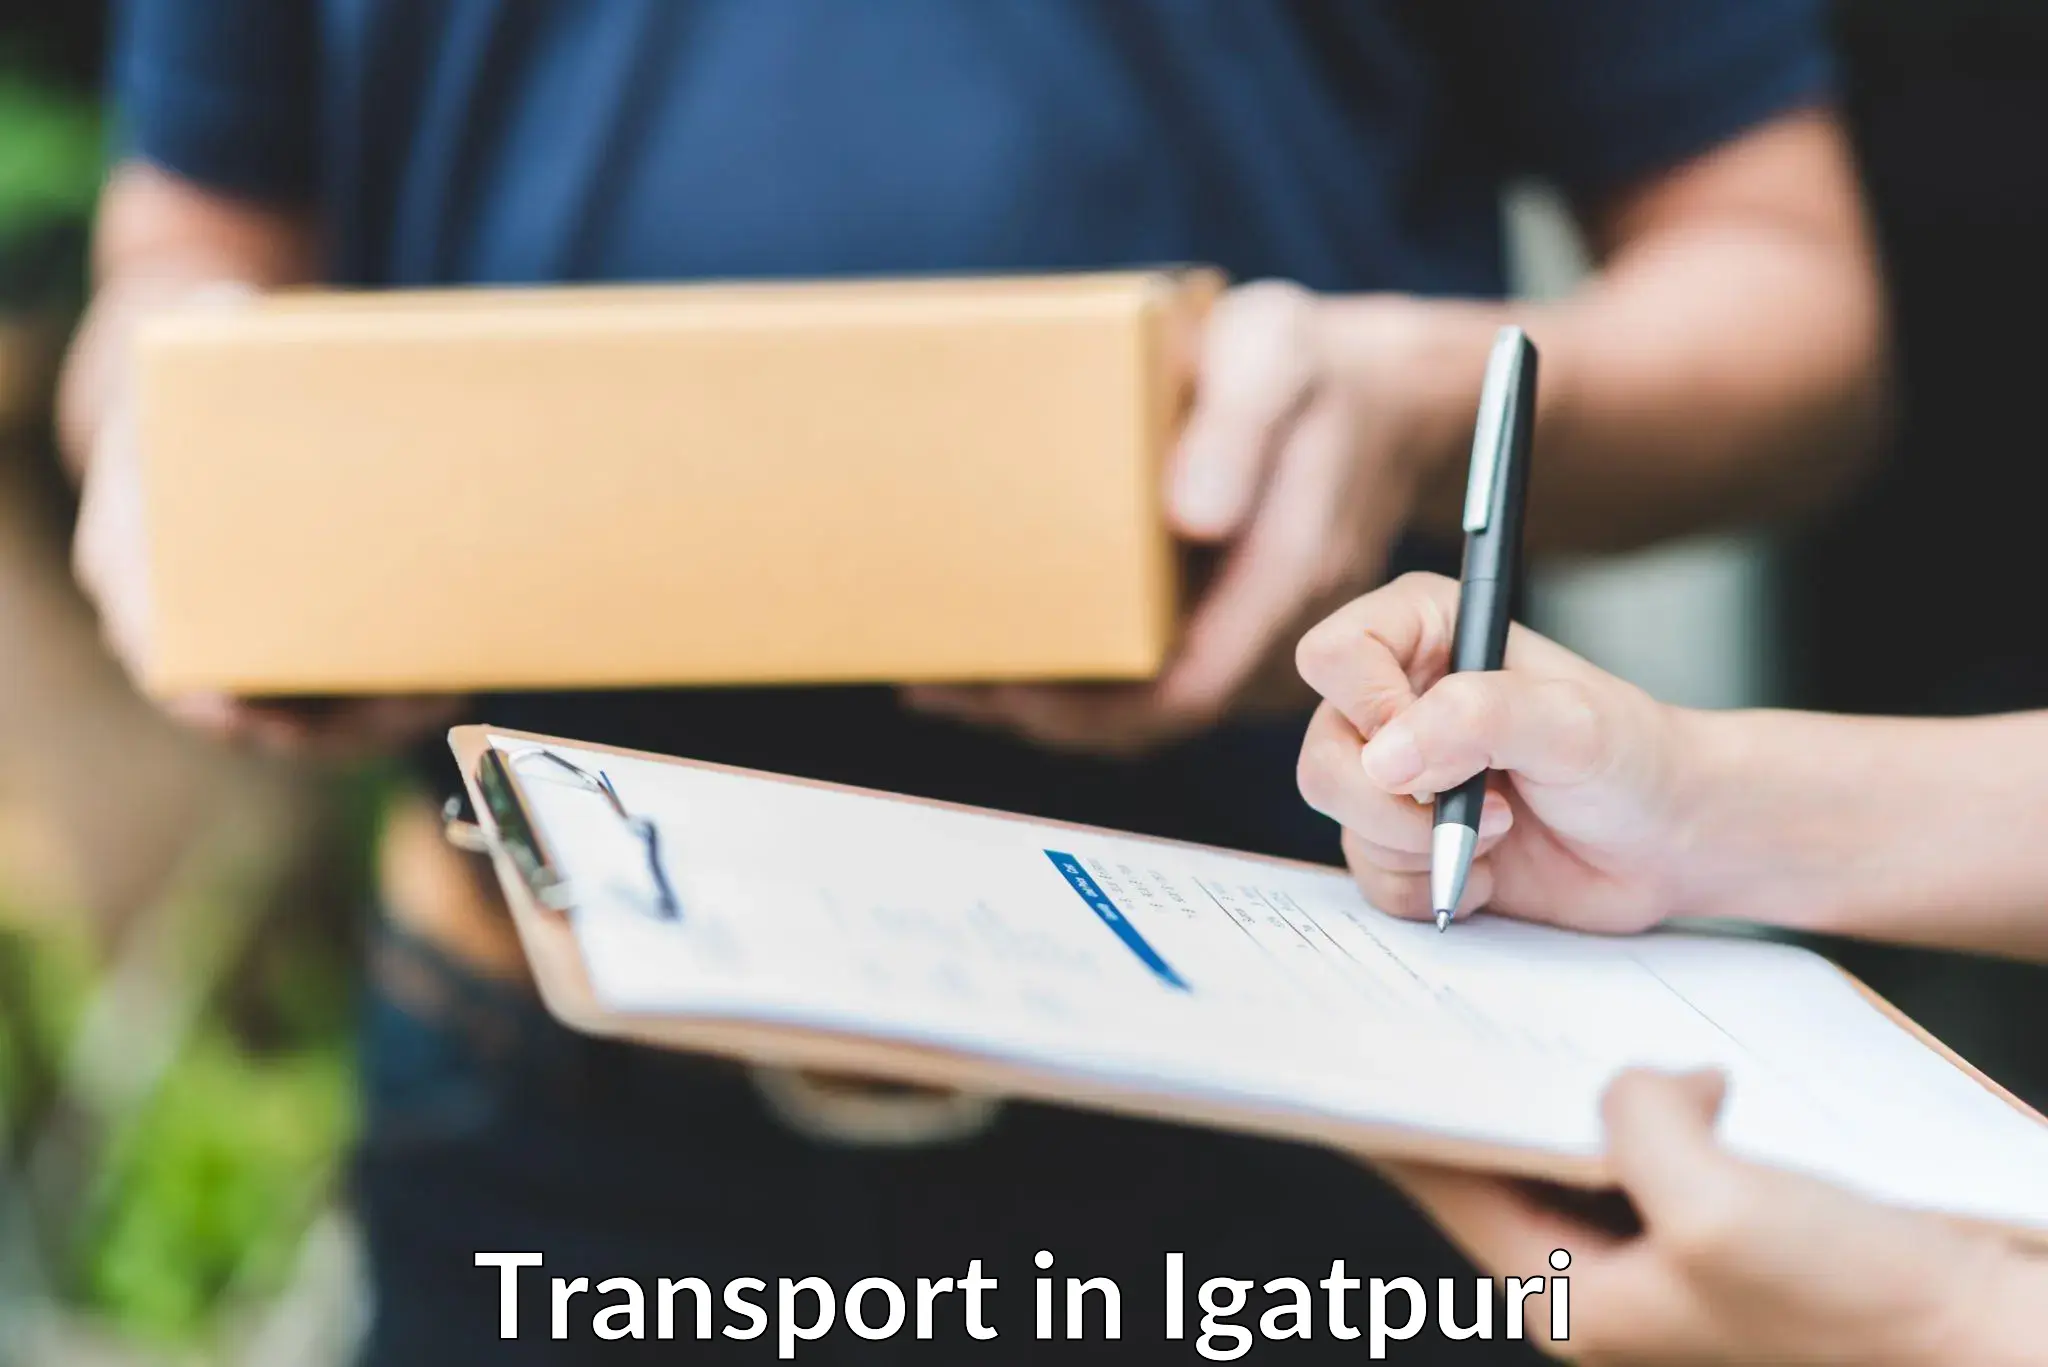 Cargo transport services in Igatpuri